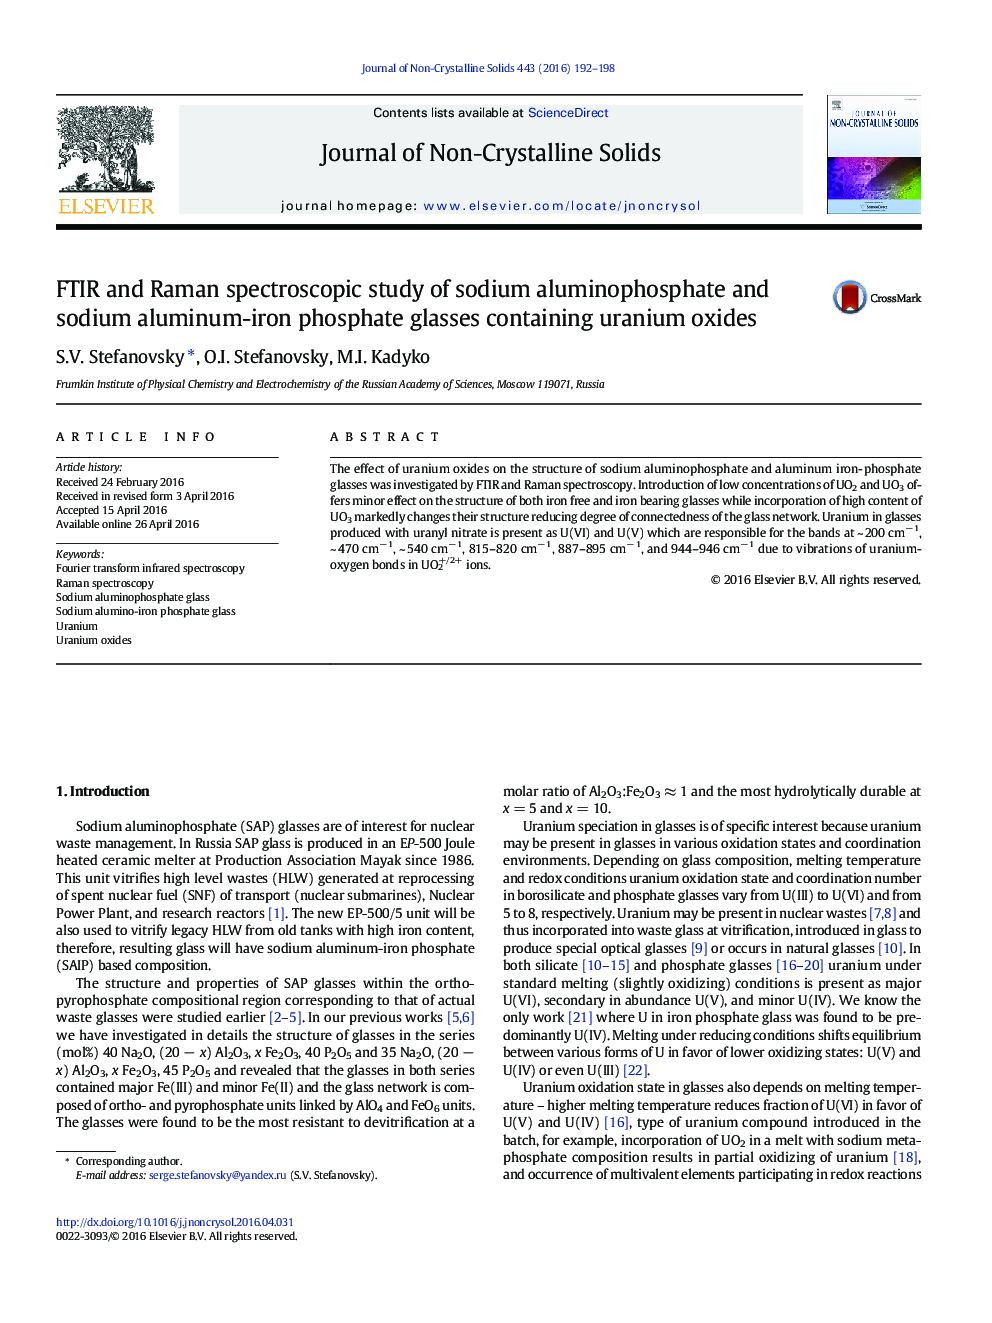 FTIR and Raman spectroscopic study of sodium aluminophosphate and sodium aluminum-iron phosphate glasses containing uranium oxides